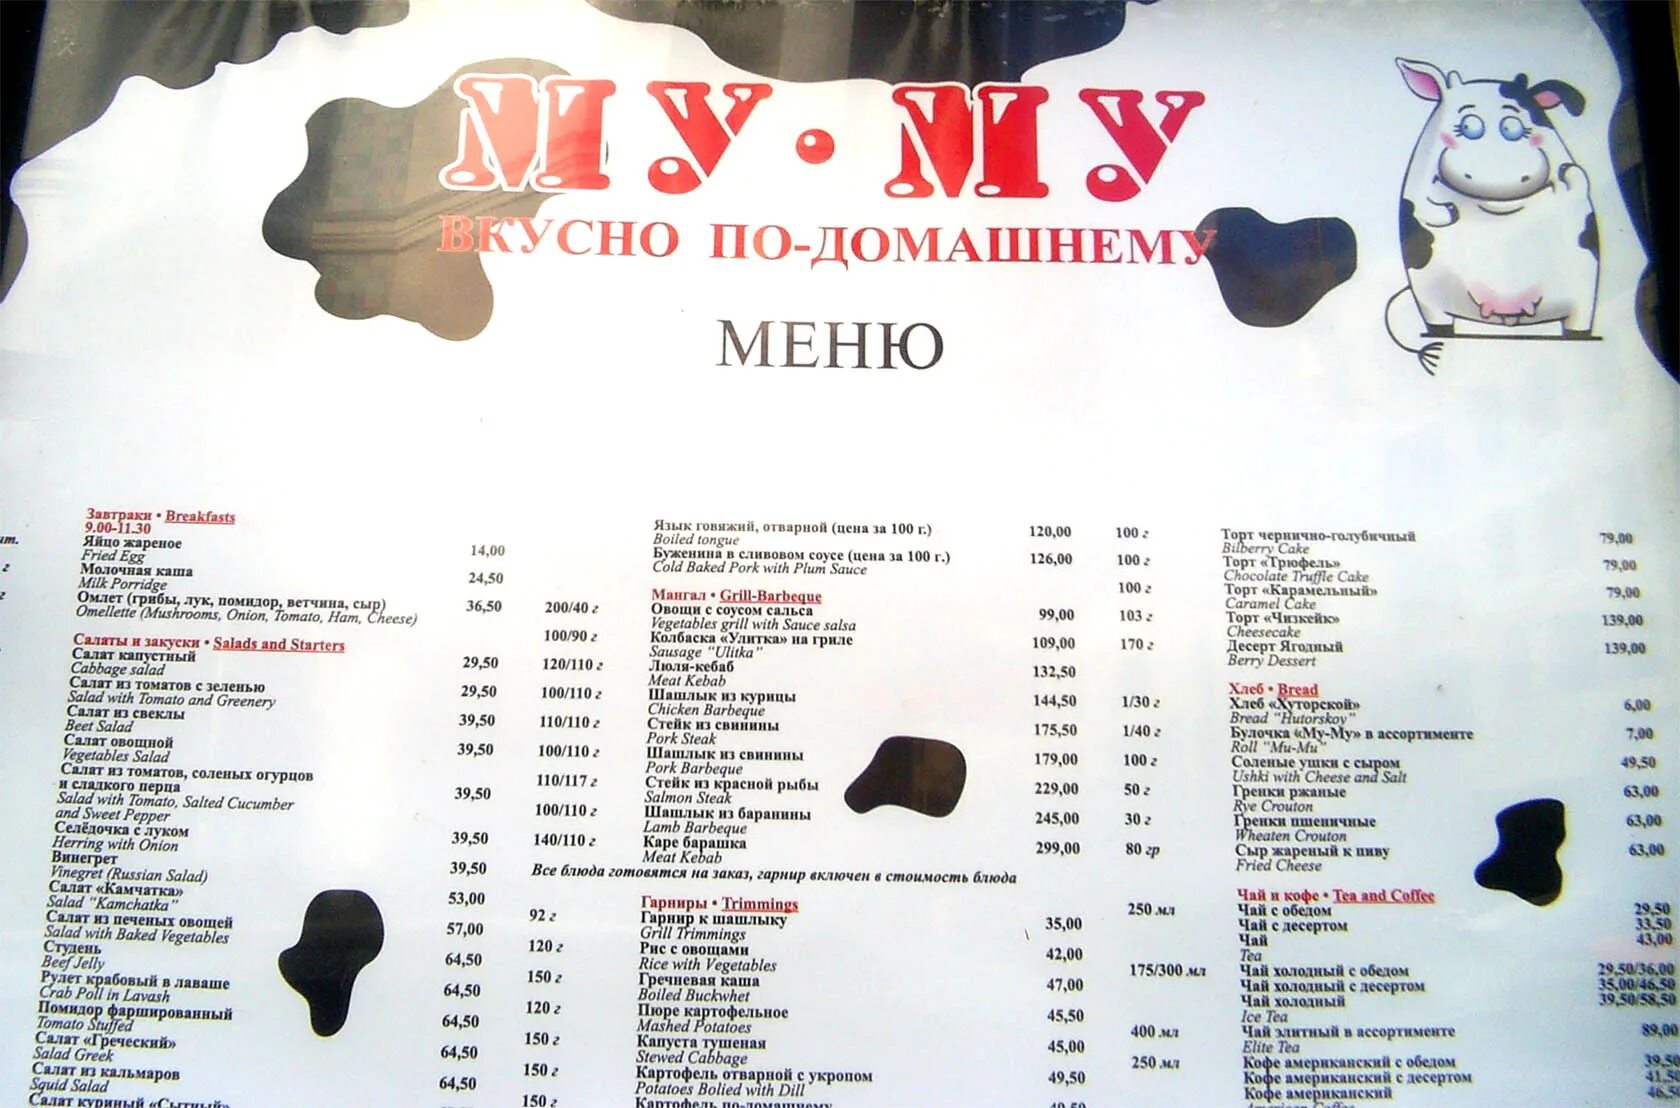 Му му адреса в москве. Муму кафе меню. Кафе му-му в Москве меню. Муму ресторан меню. Кафе Муму в Москве.